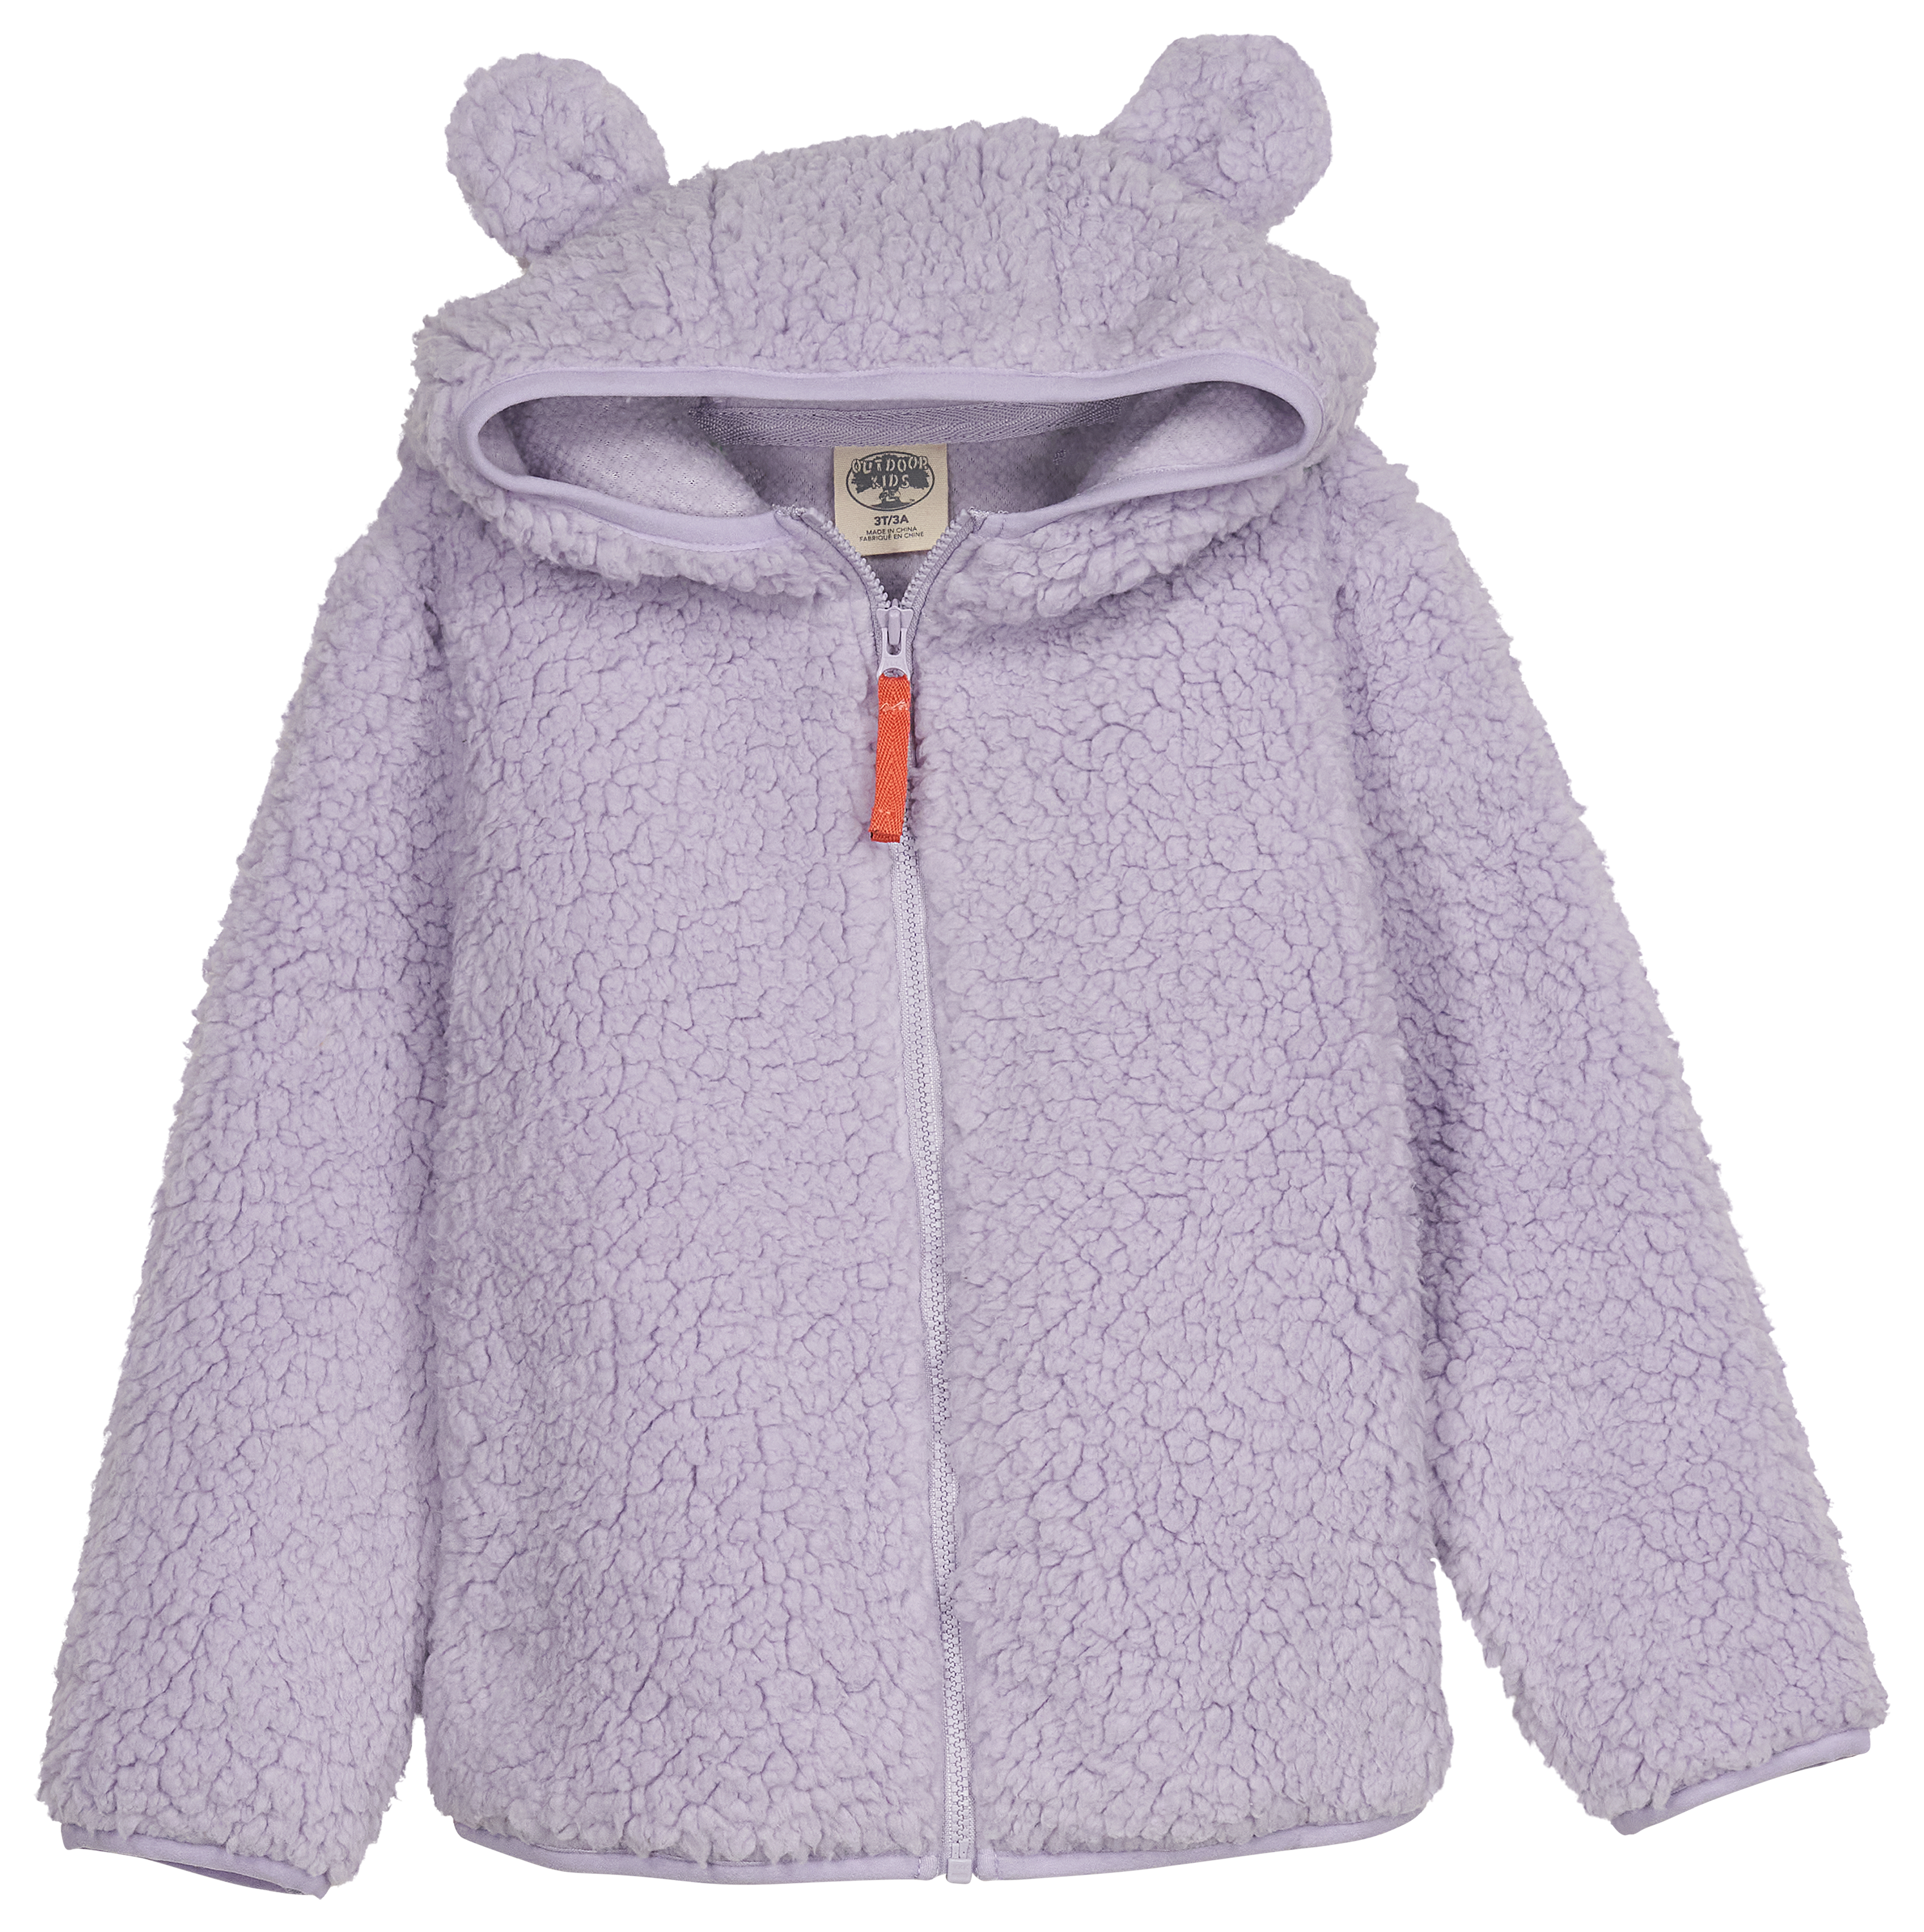 Outdoor Kids Cozy Fleece Full-Zip Hoodie for Babies - Lavender - 6-9 Months